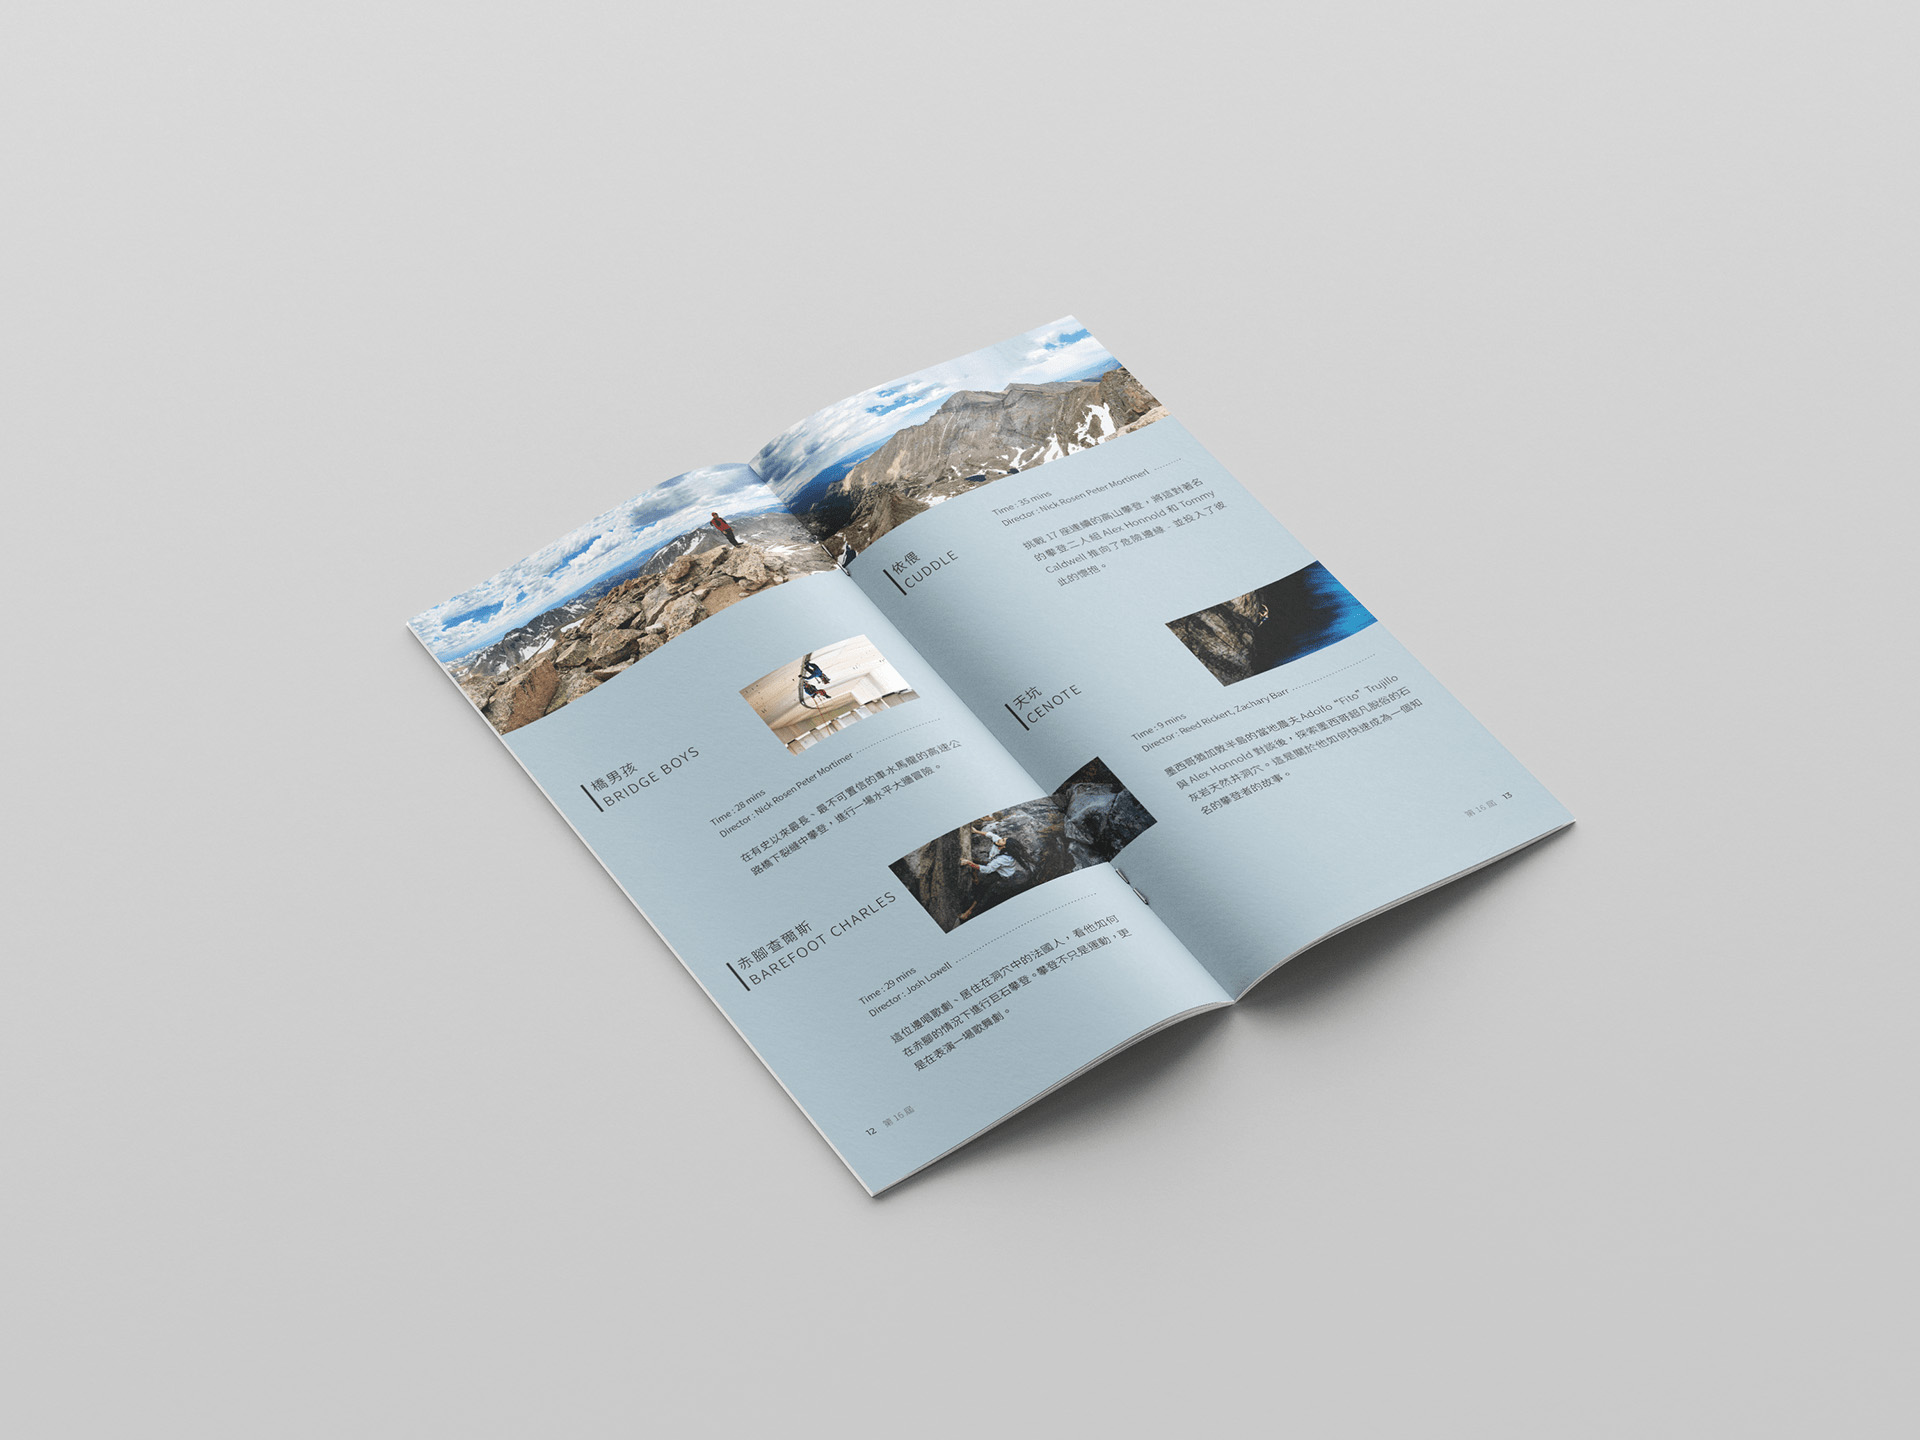 嘉瓦士山岳影展手册设计